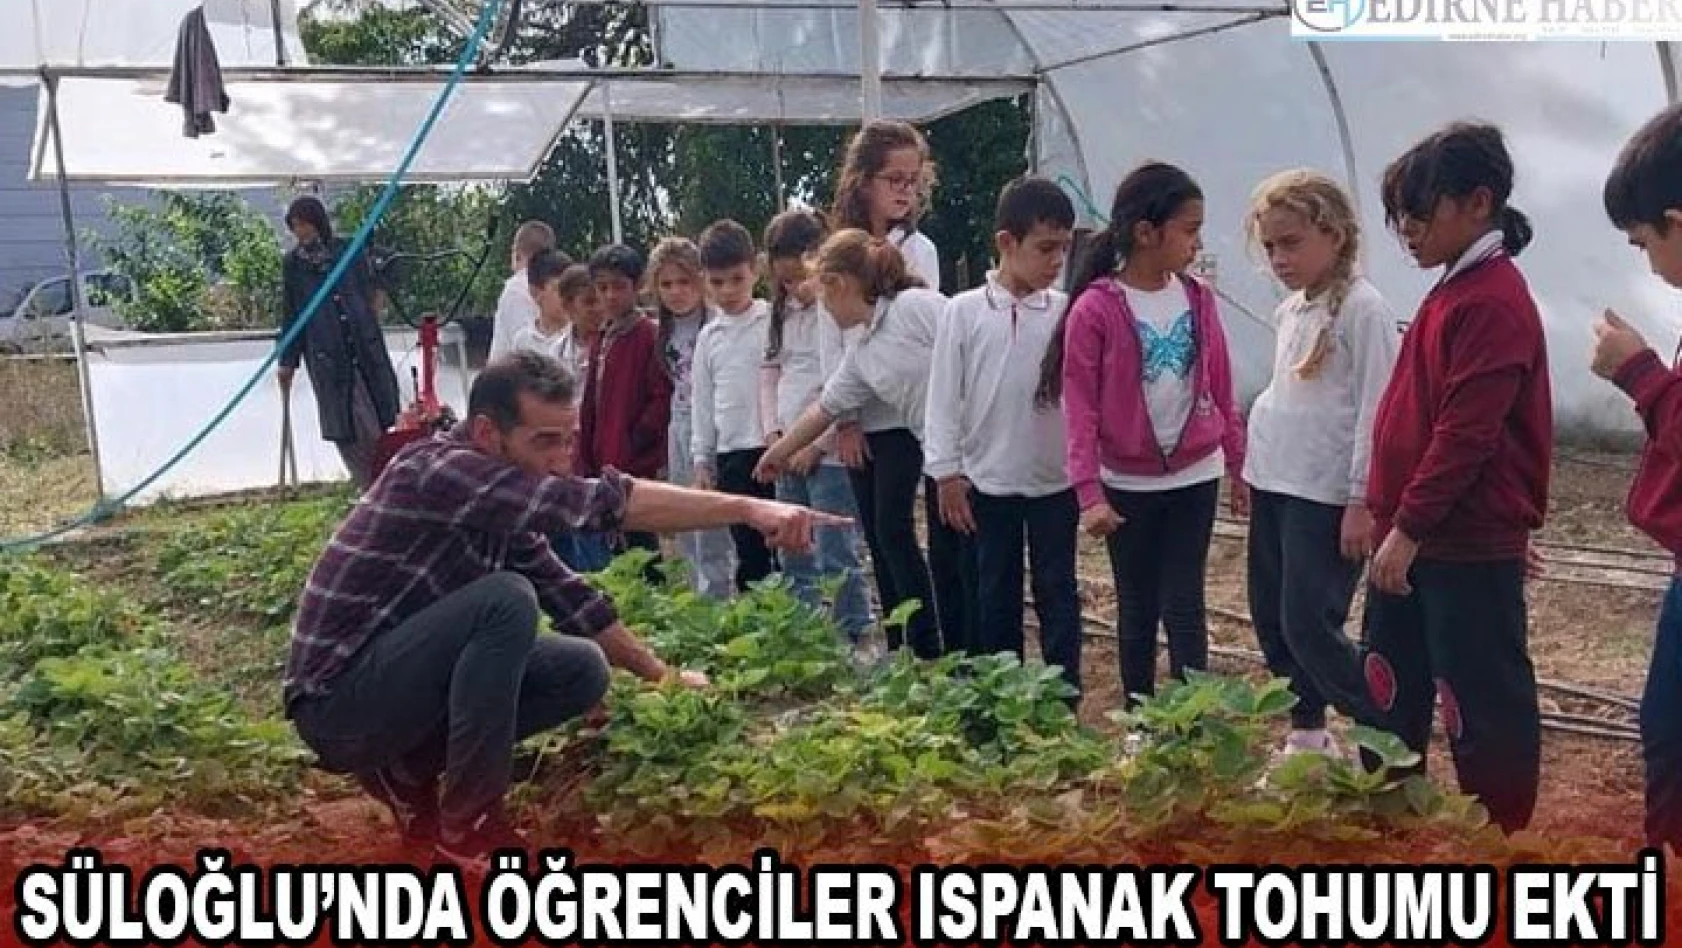 Süloğlu'nda öğrenciler ıspanak tohumu ekti